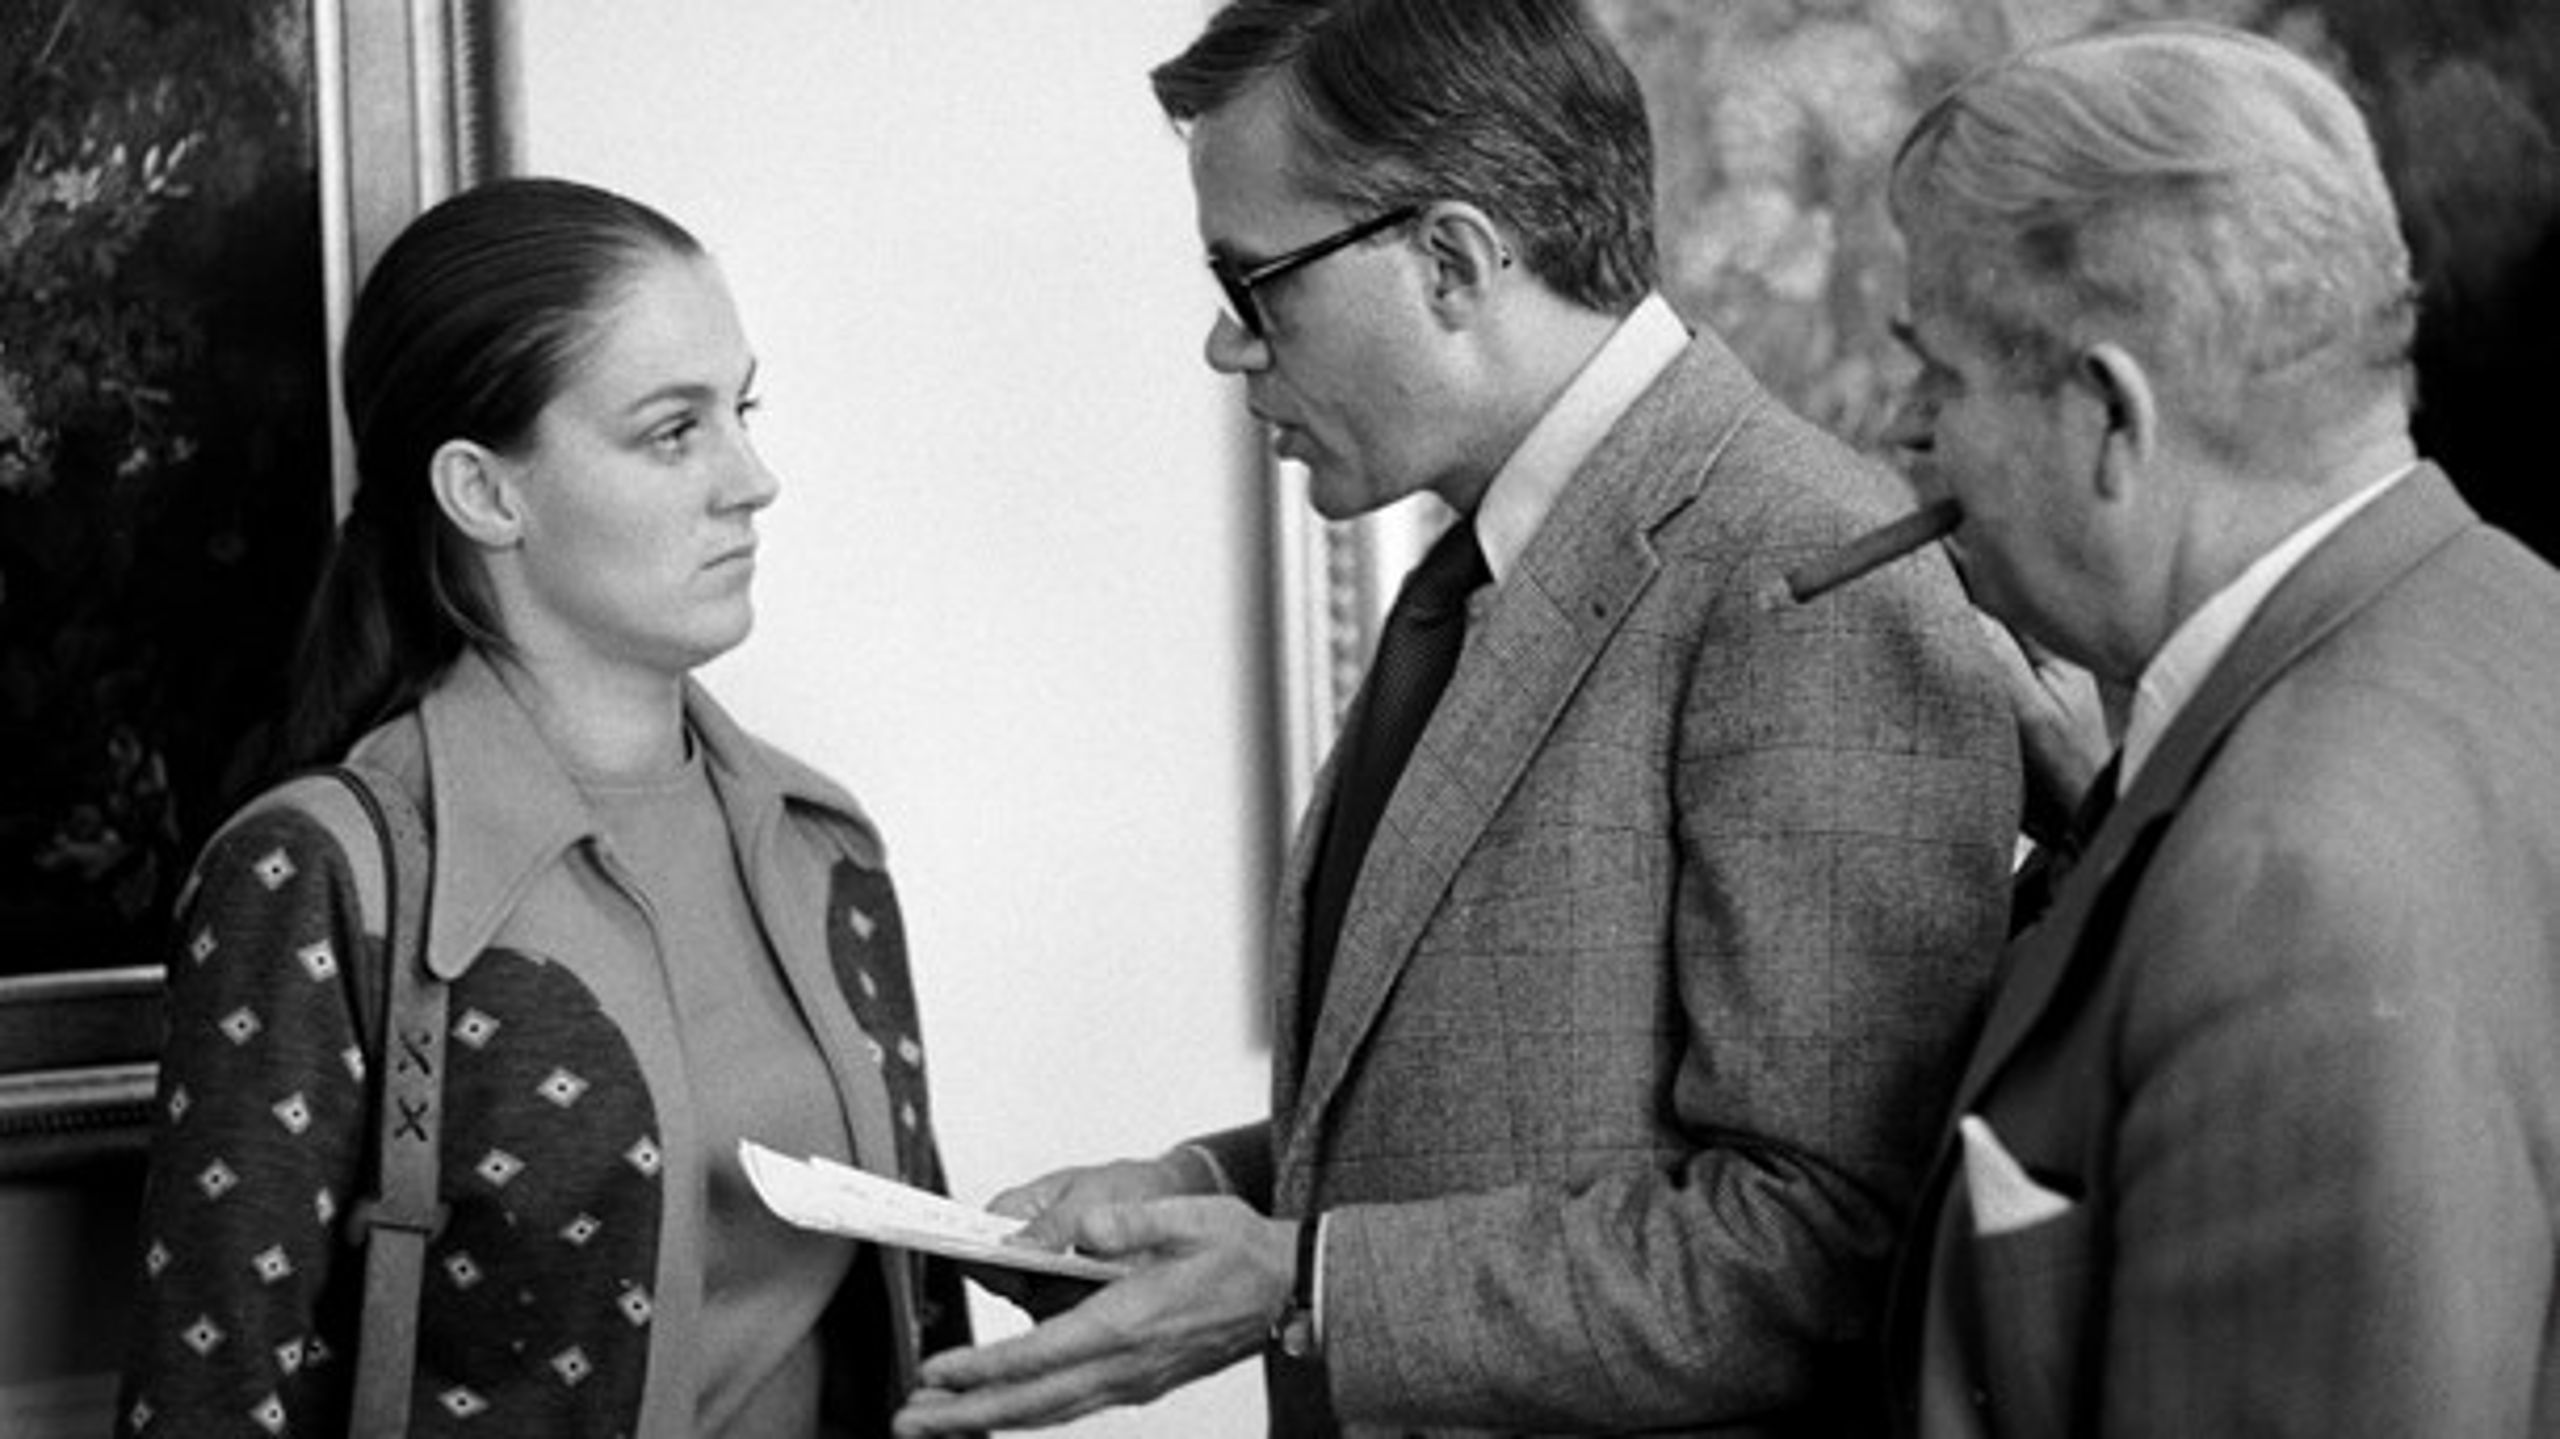 MANSPLAINING. Undervisningsminister Ritt Bjerregaard, finansminister Knud Heinesen og handelsminister Per Hækkerup i 1976, hvor kvindelige ministre var et absolut særsyn.